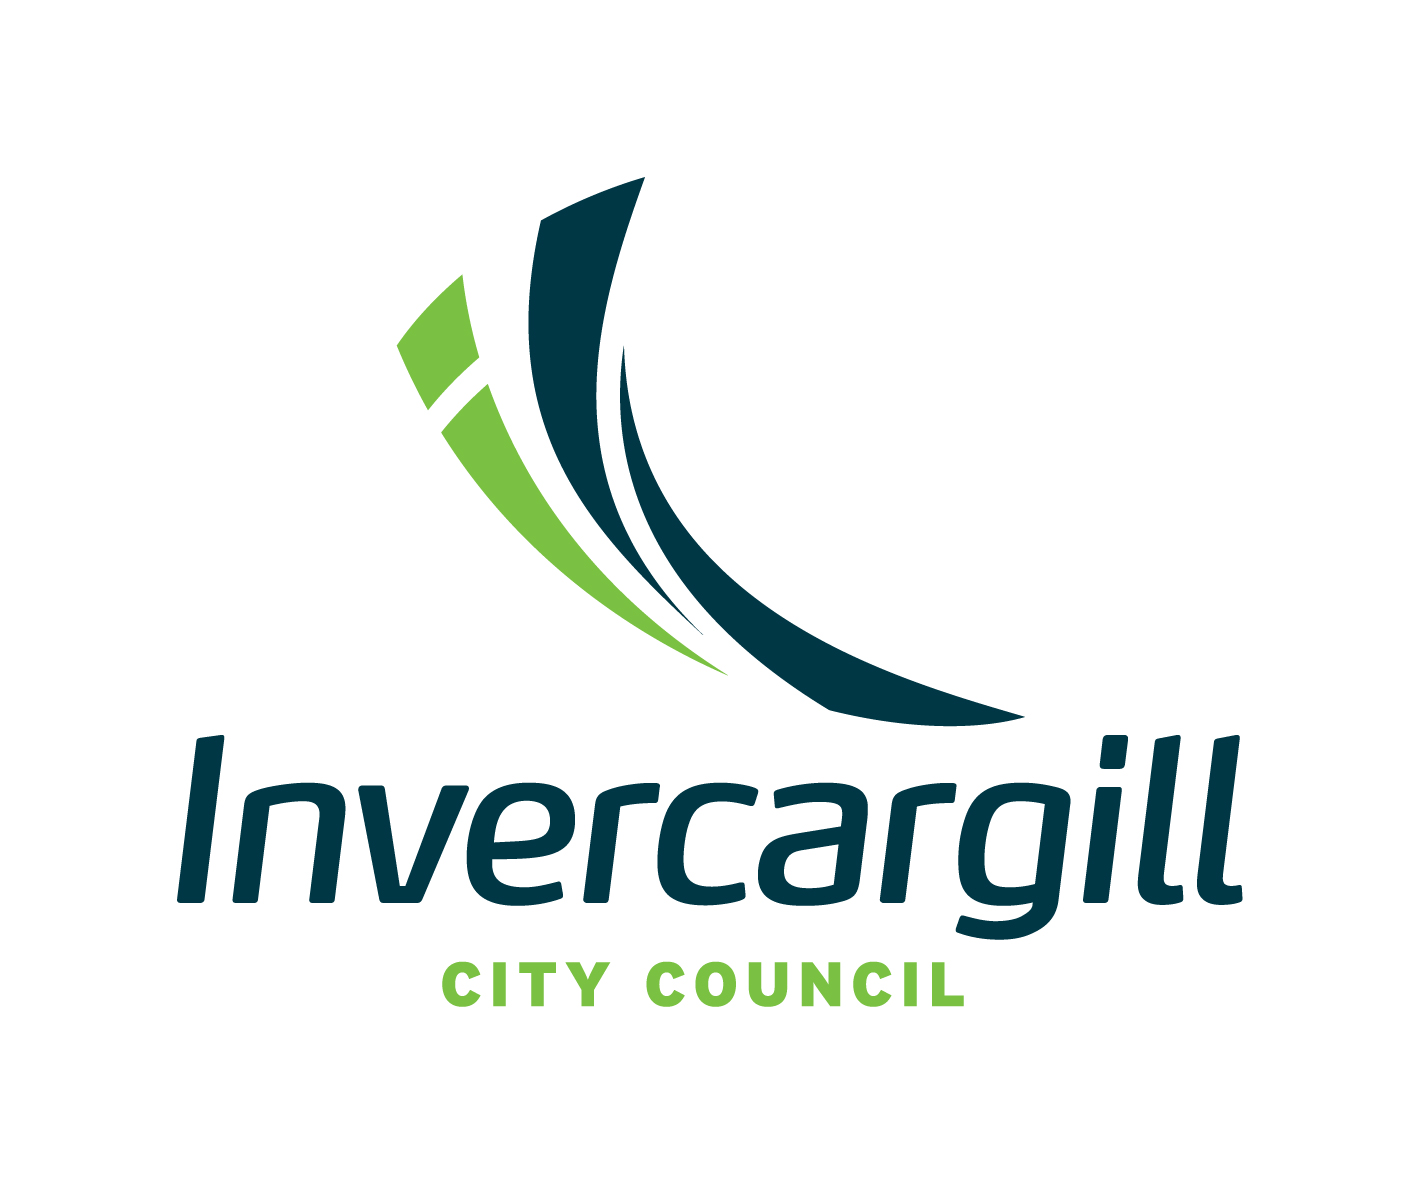 Council logo